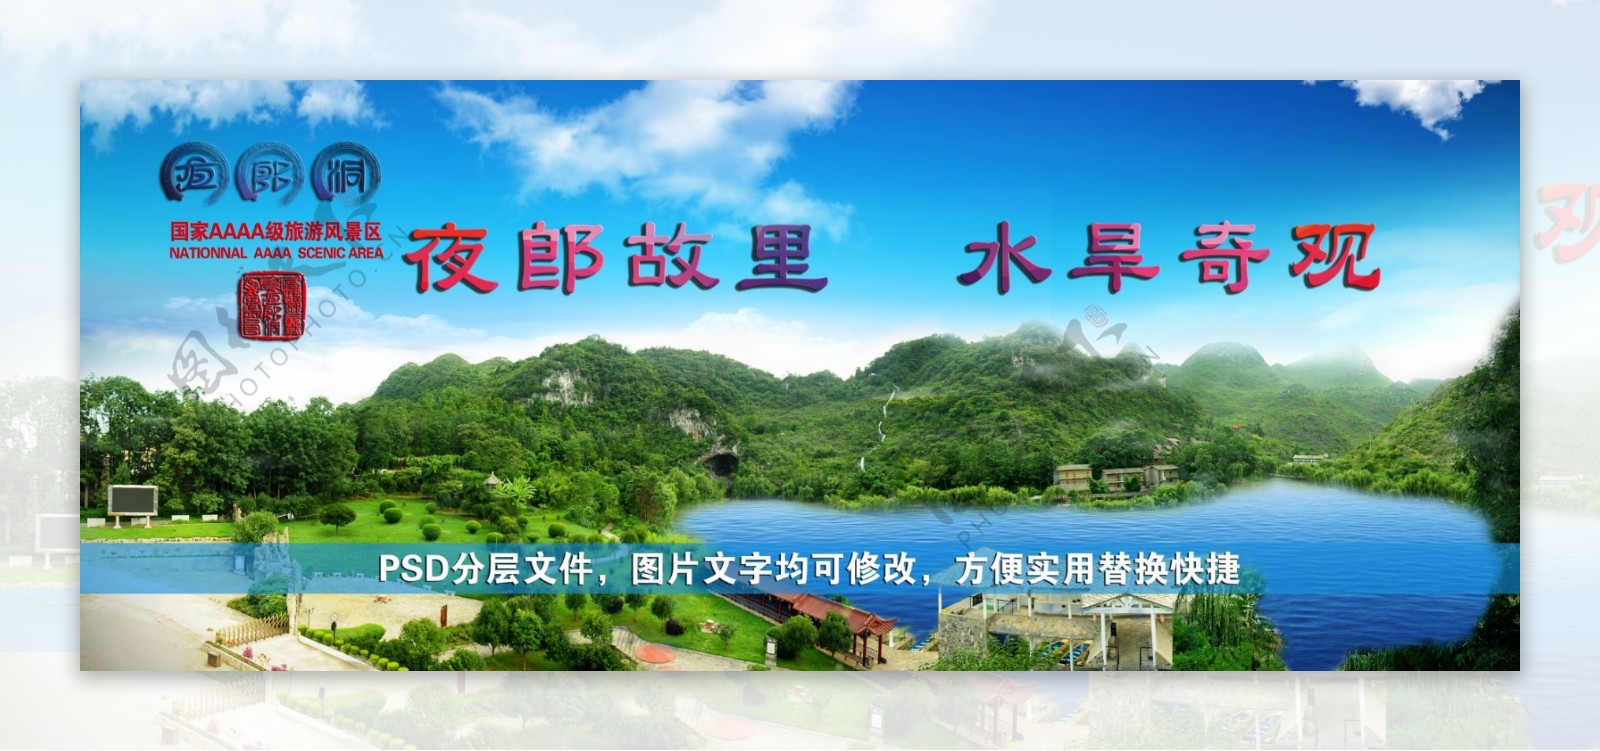 贵州夜郎洞景区宣传广告